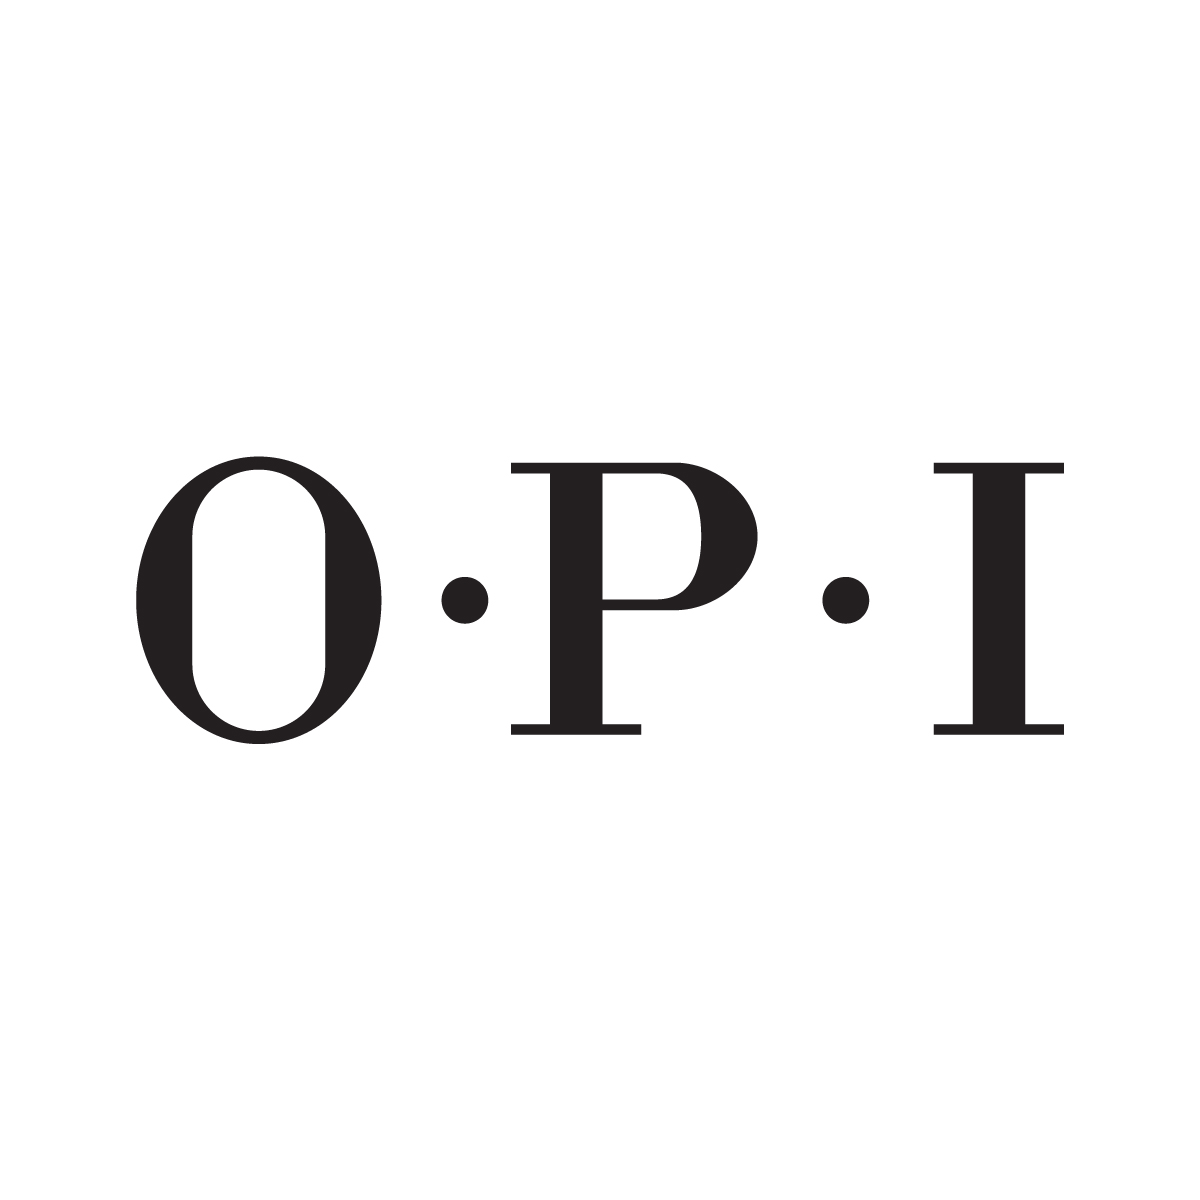 O.P.I